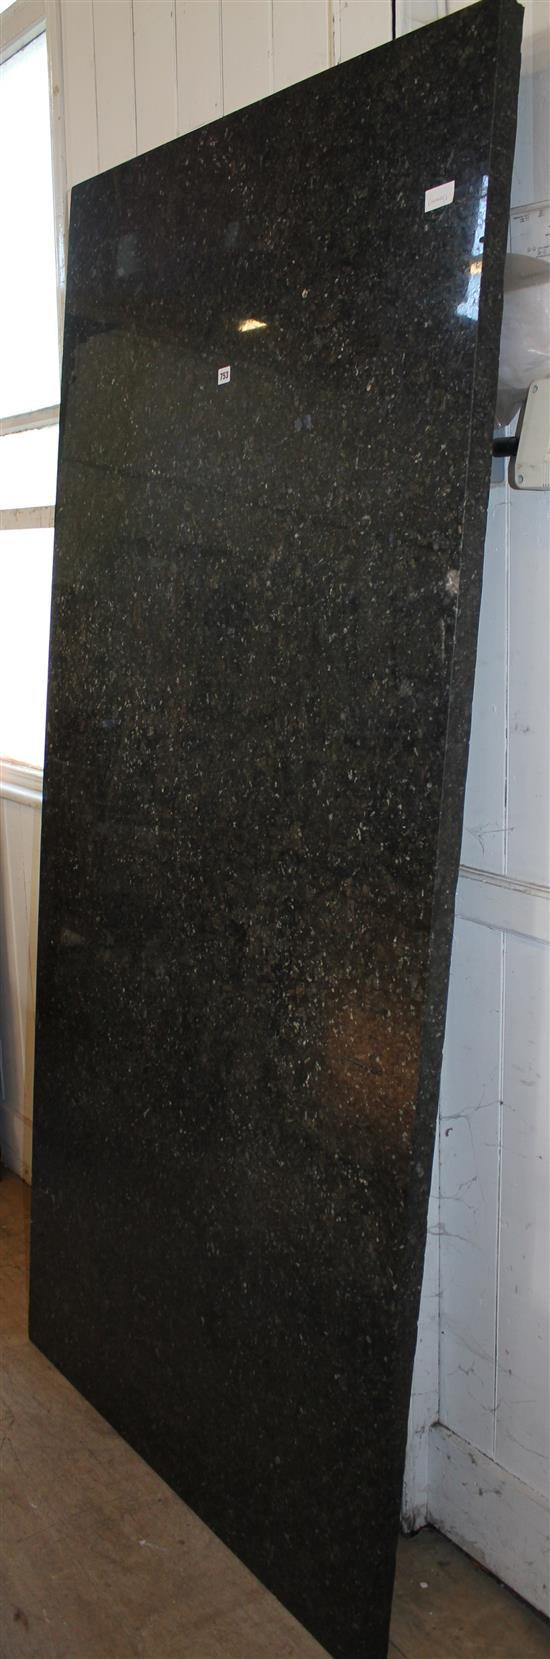 Granite worktop 84 x 42